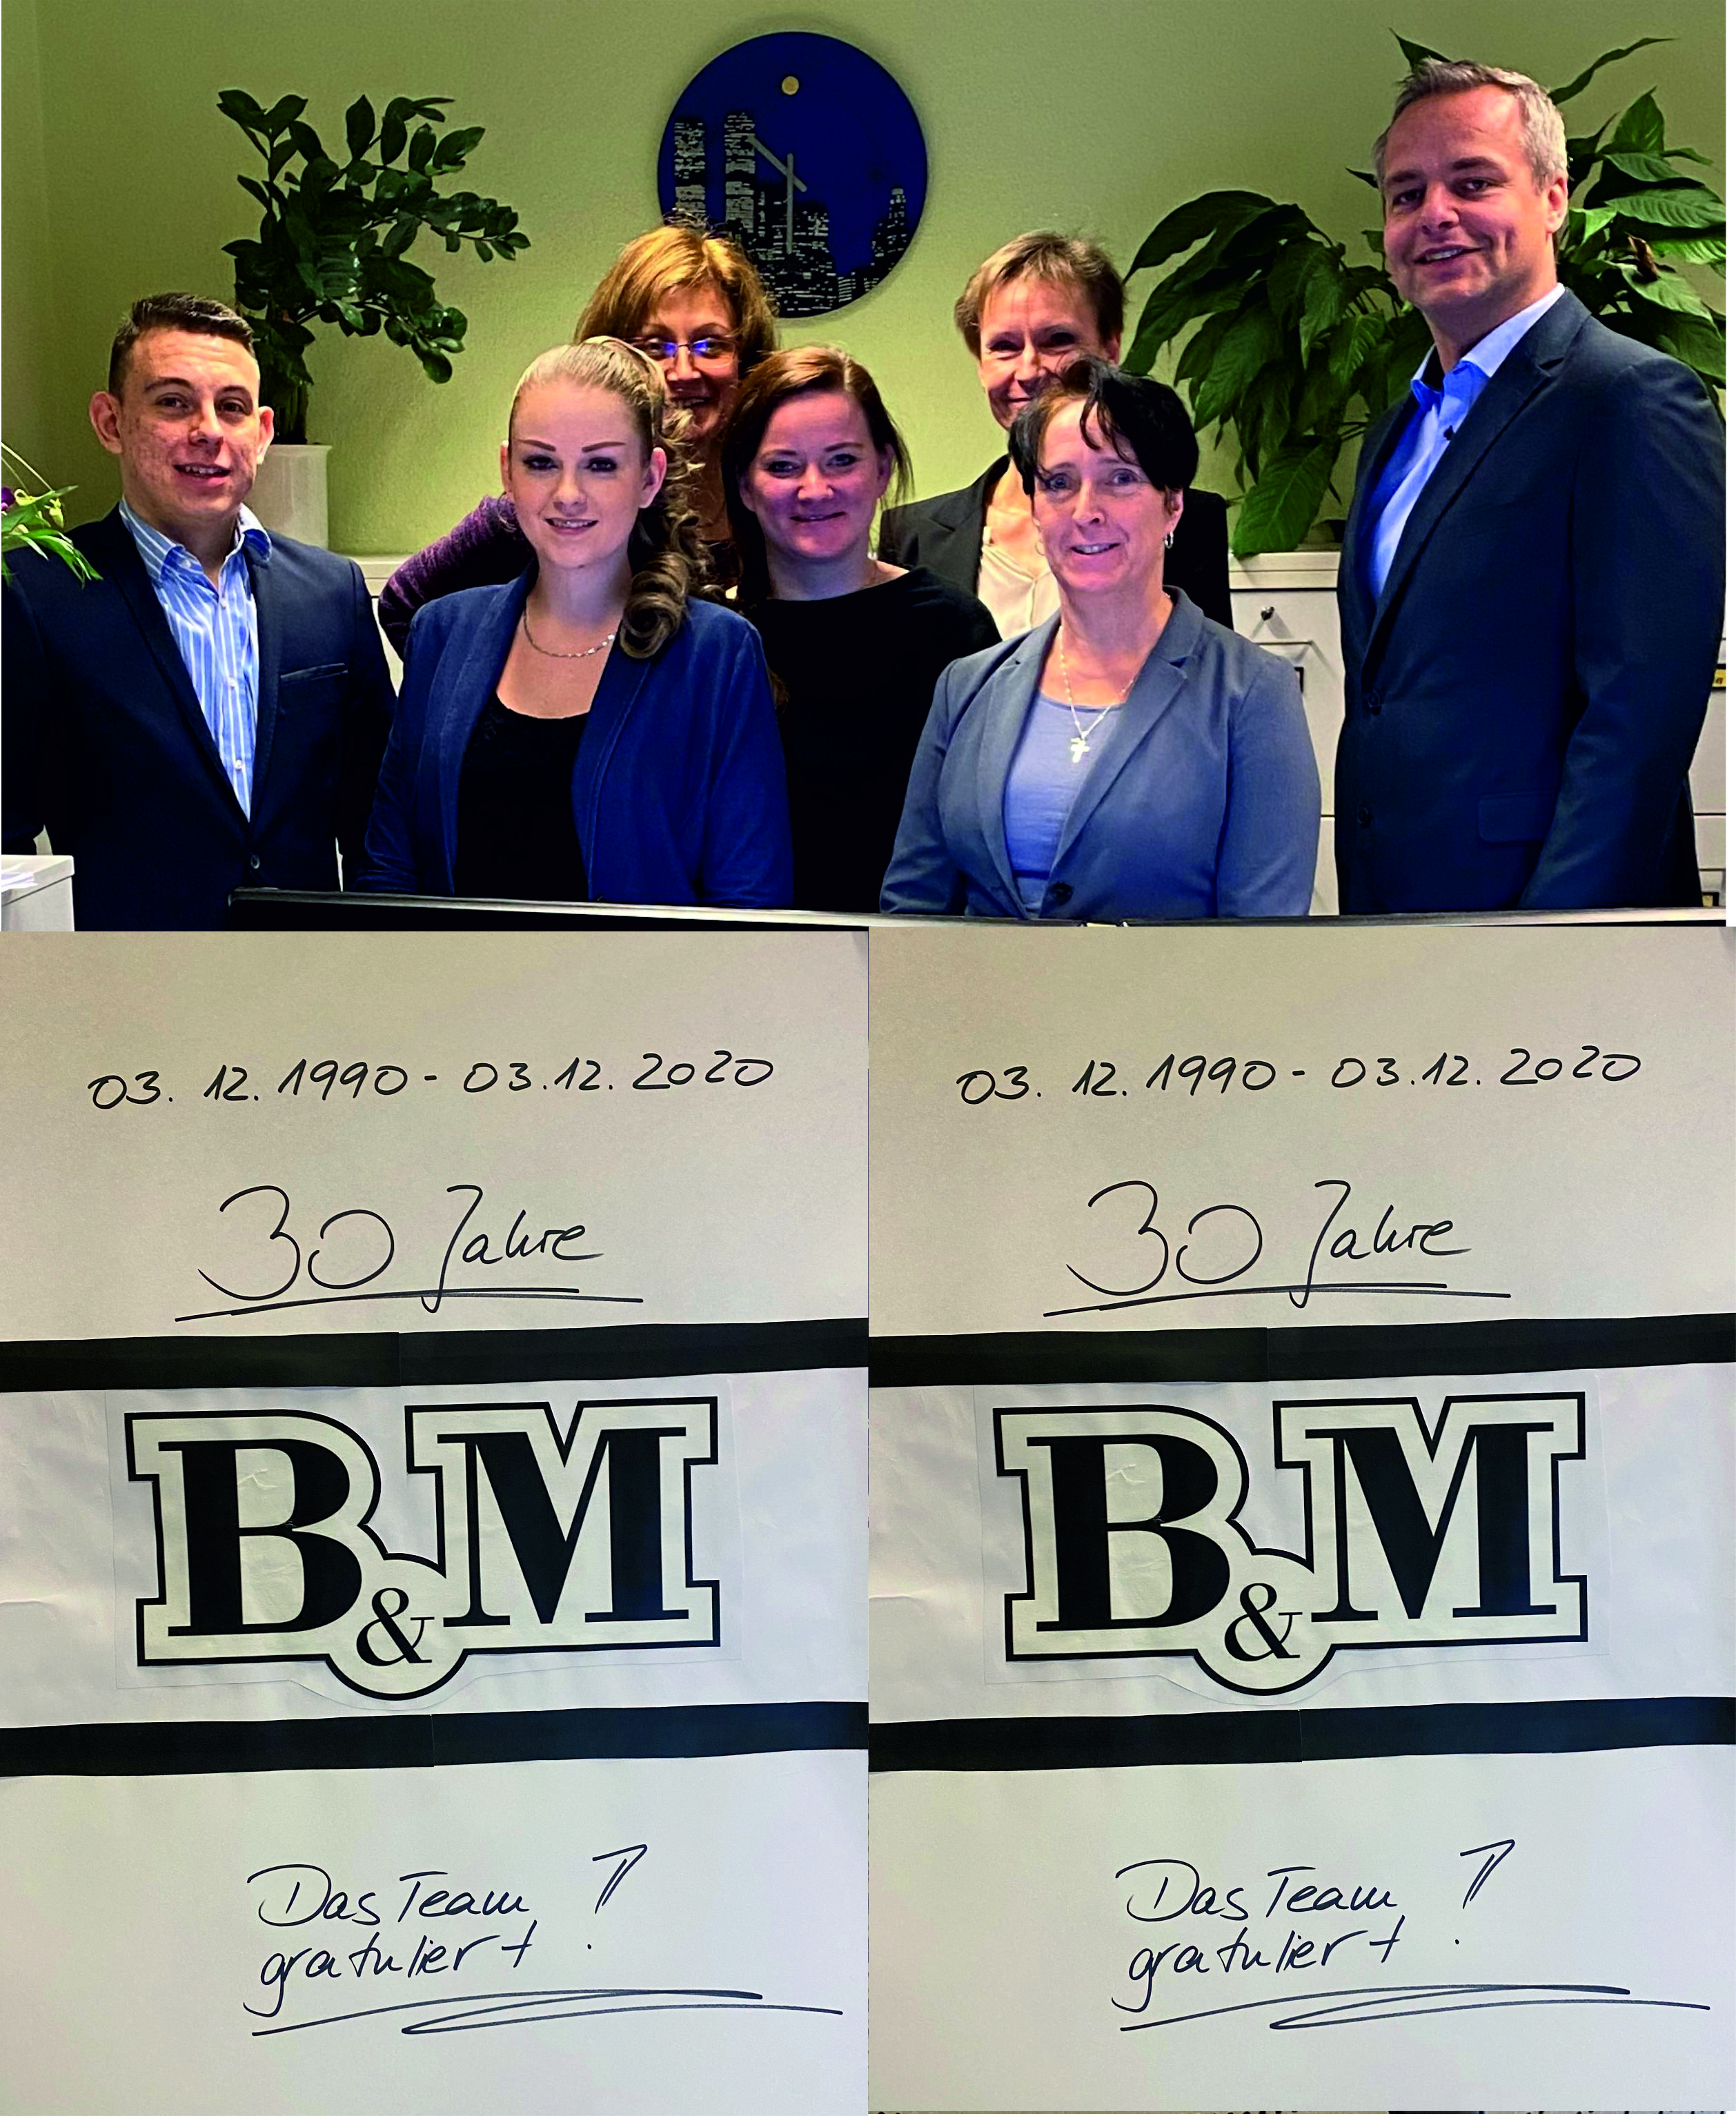 30 Jahre B&M - das Team gratuliert